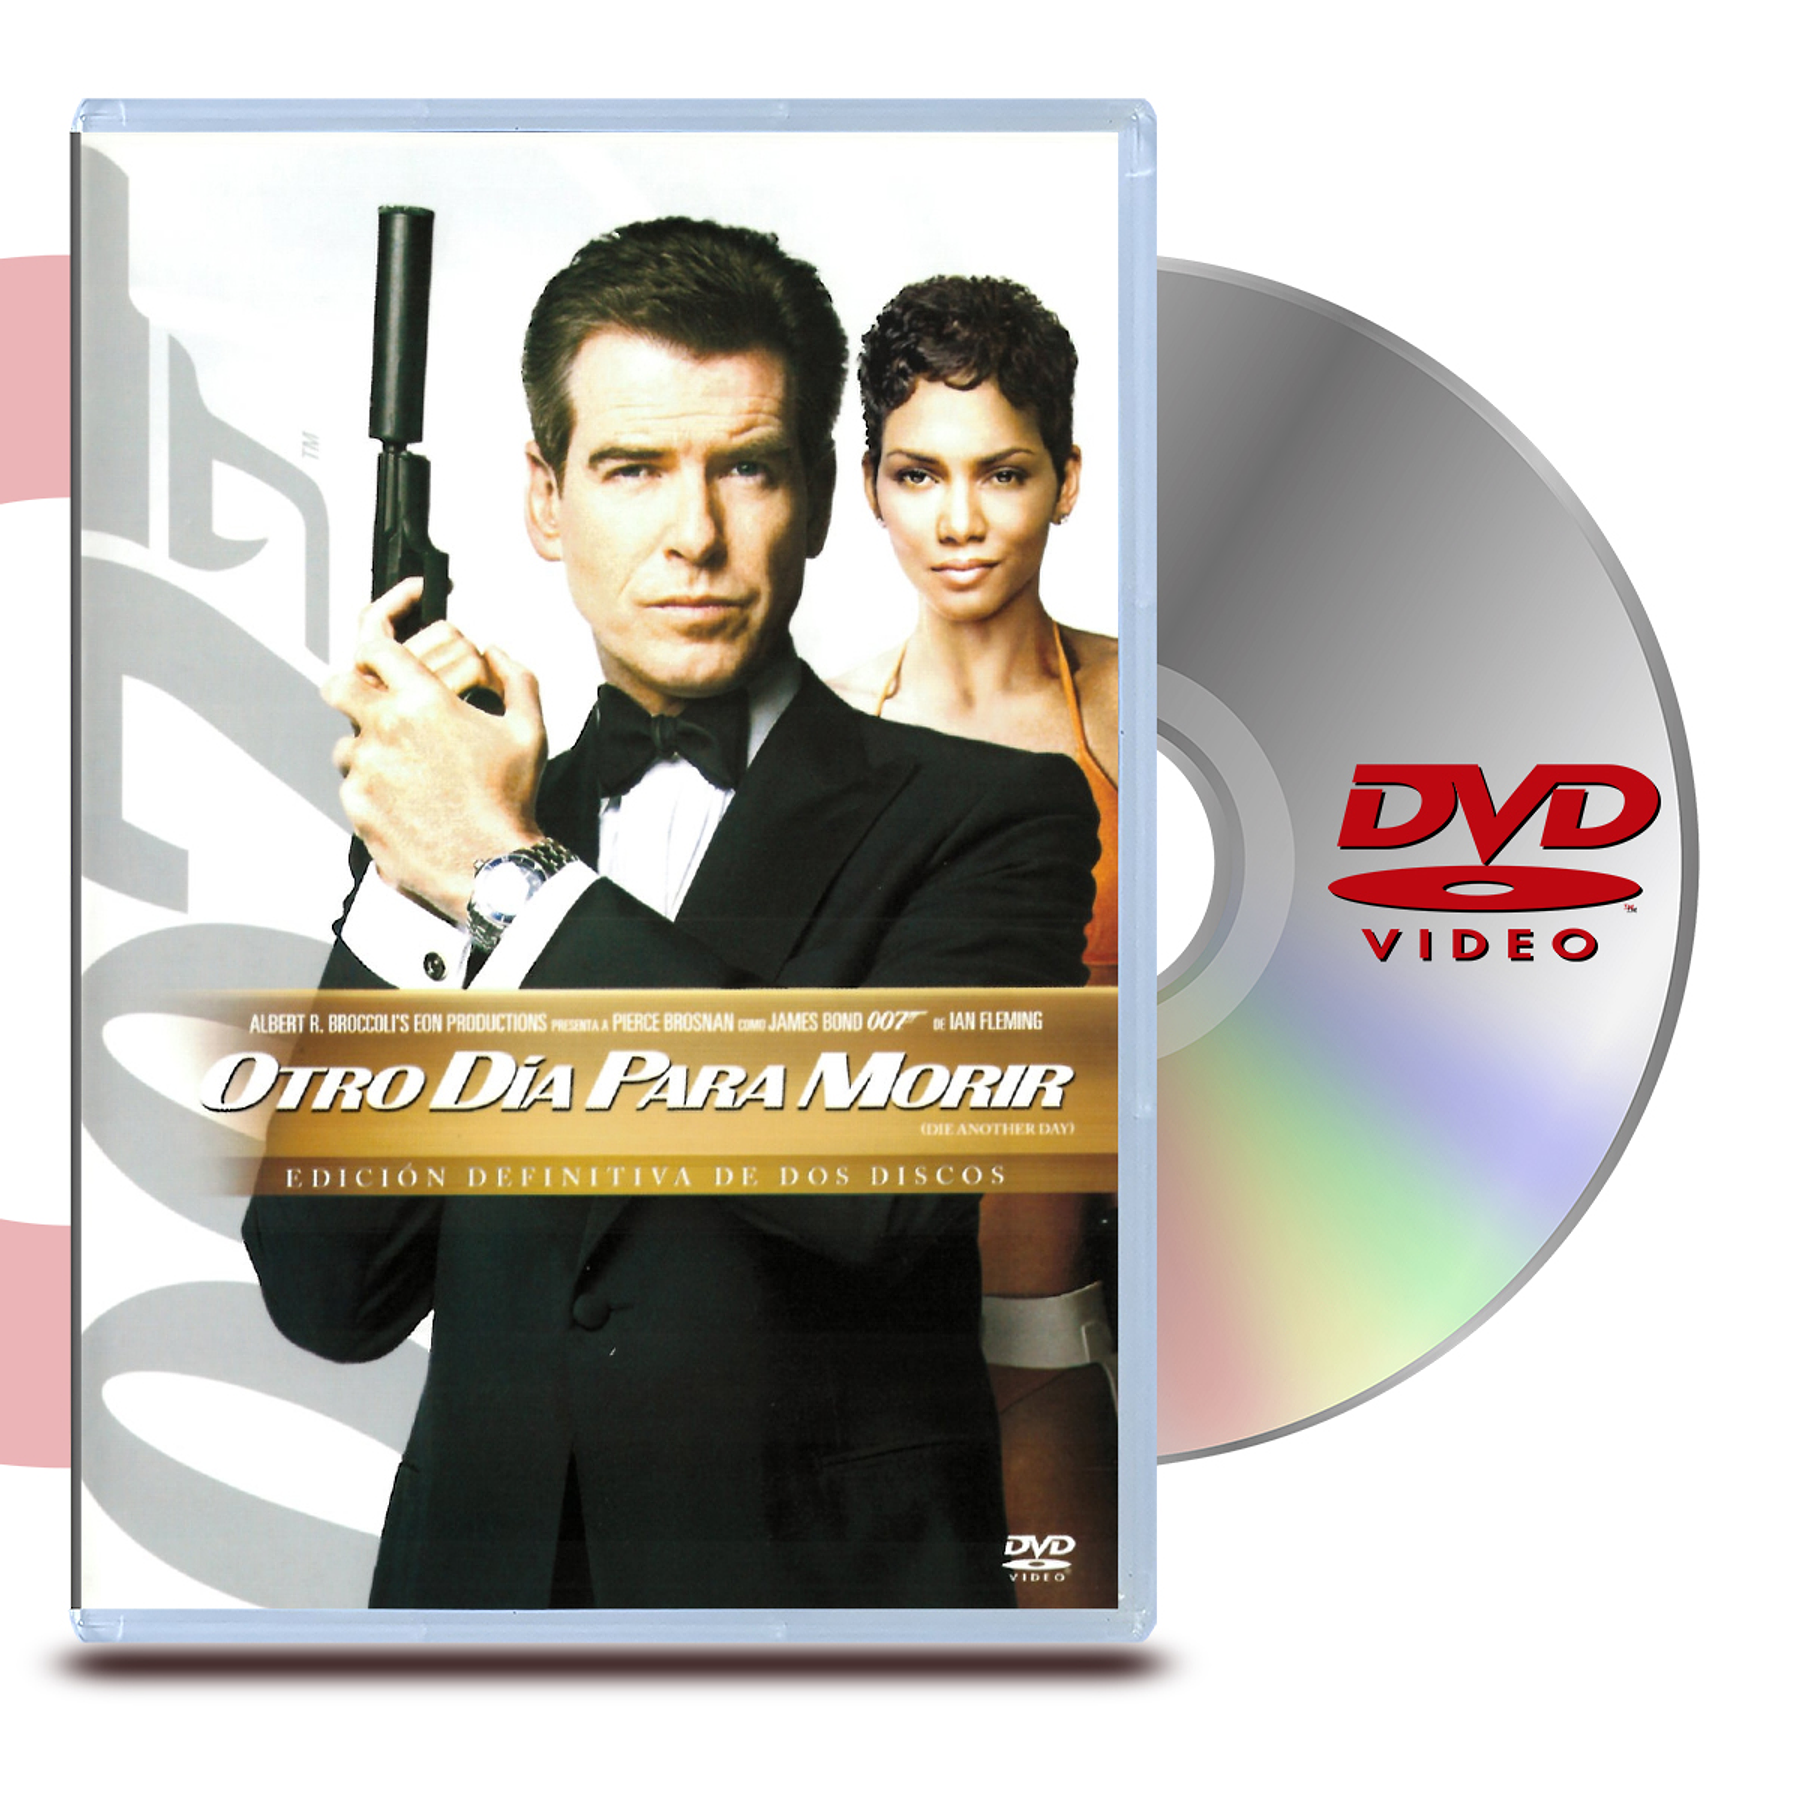 DVD 007 OTRO DIA PARA MORIR